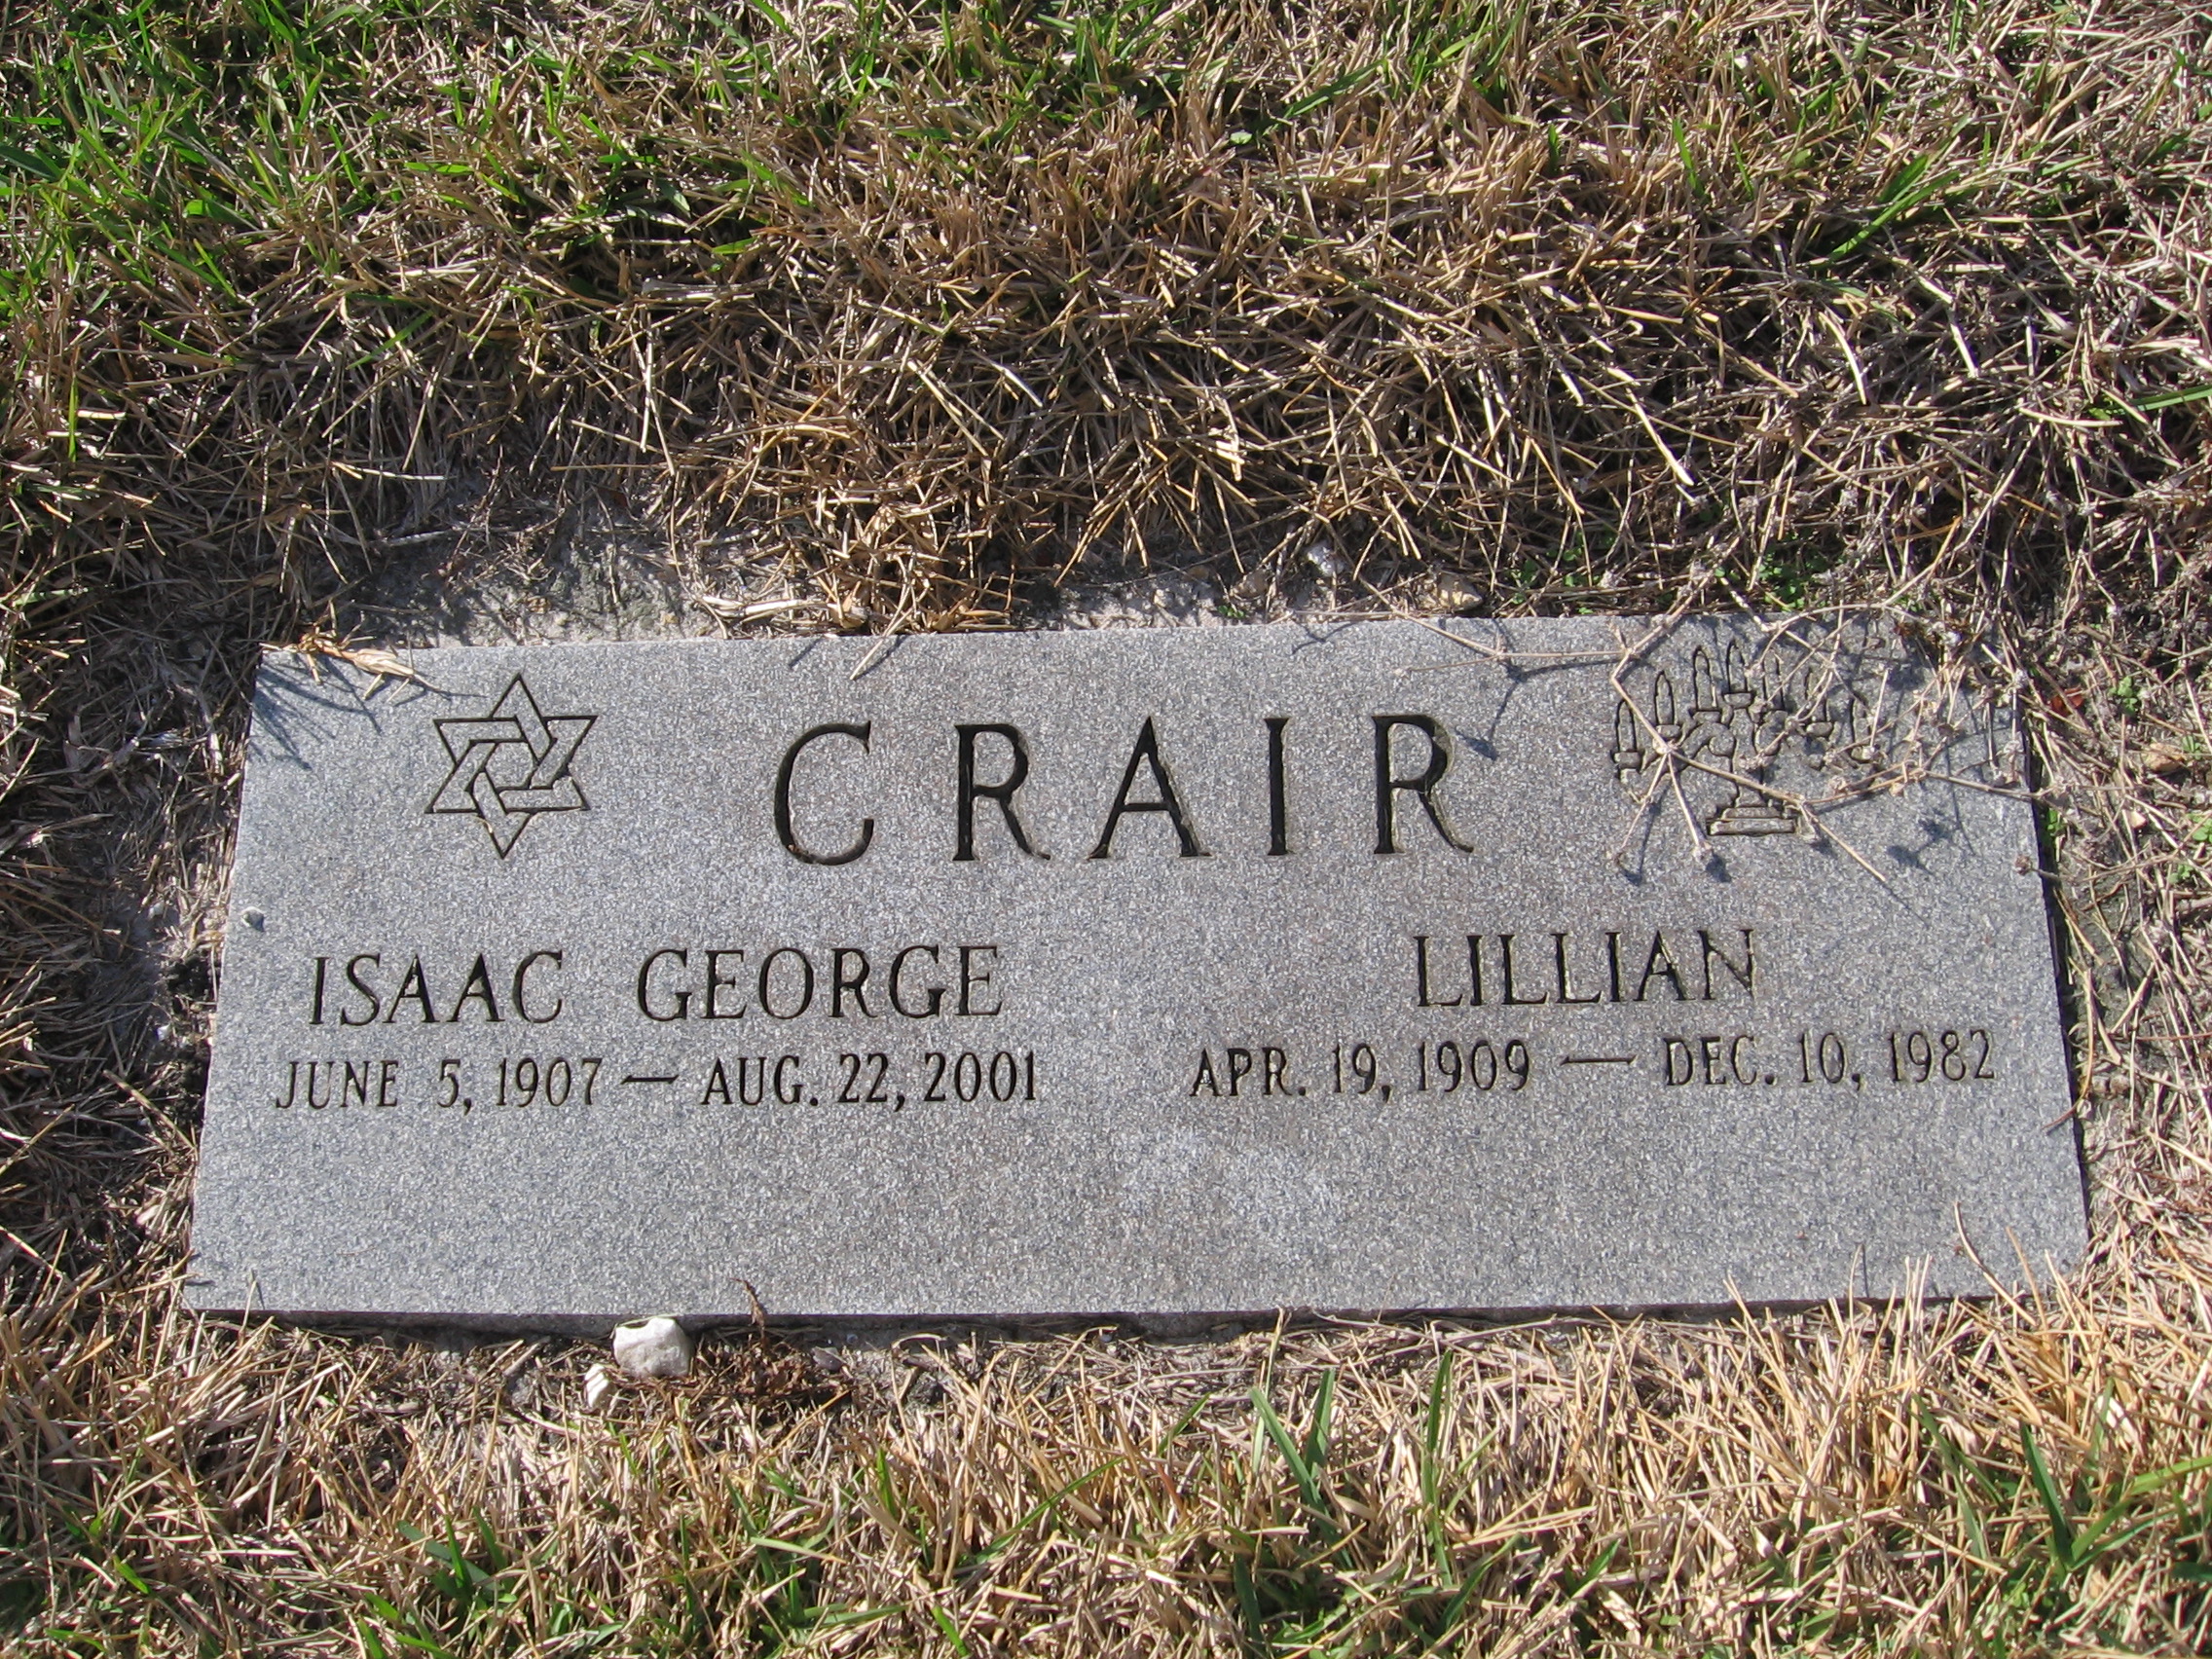 Isaac George Crair